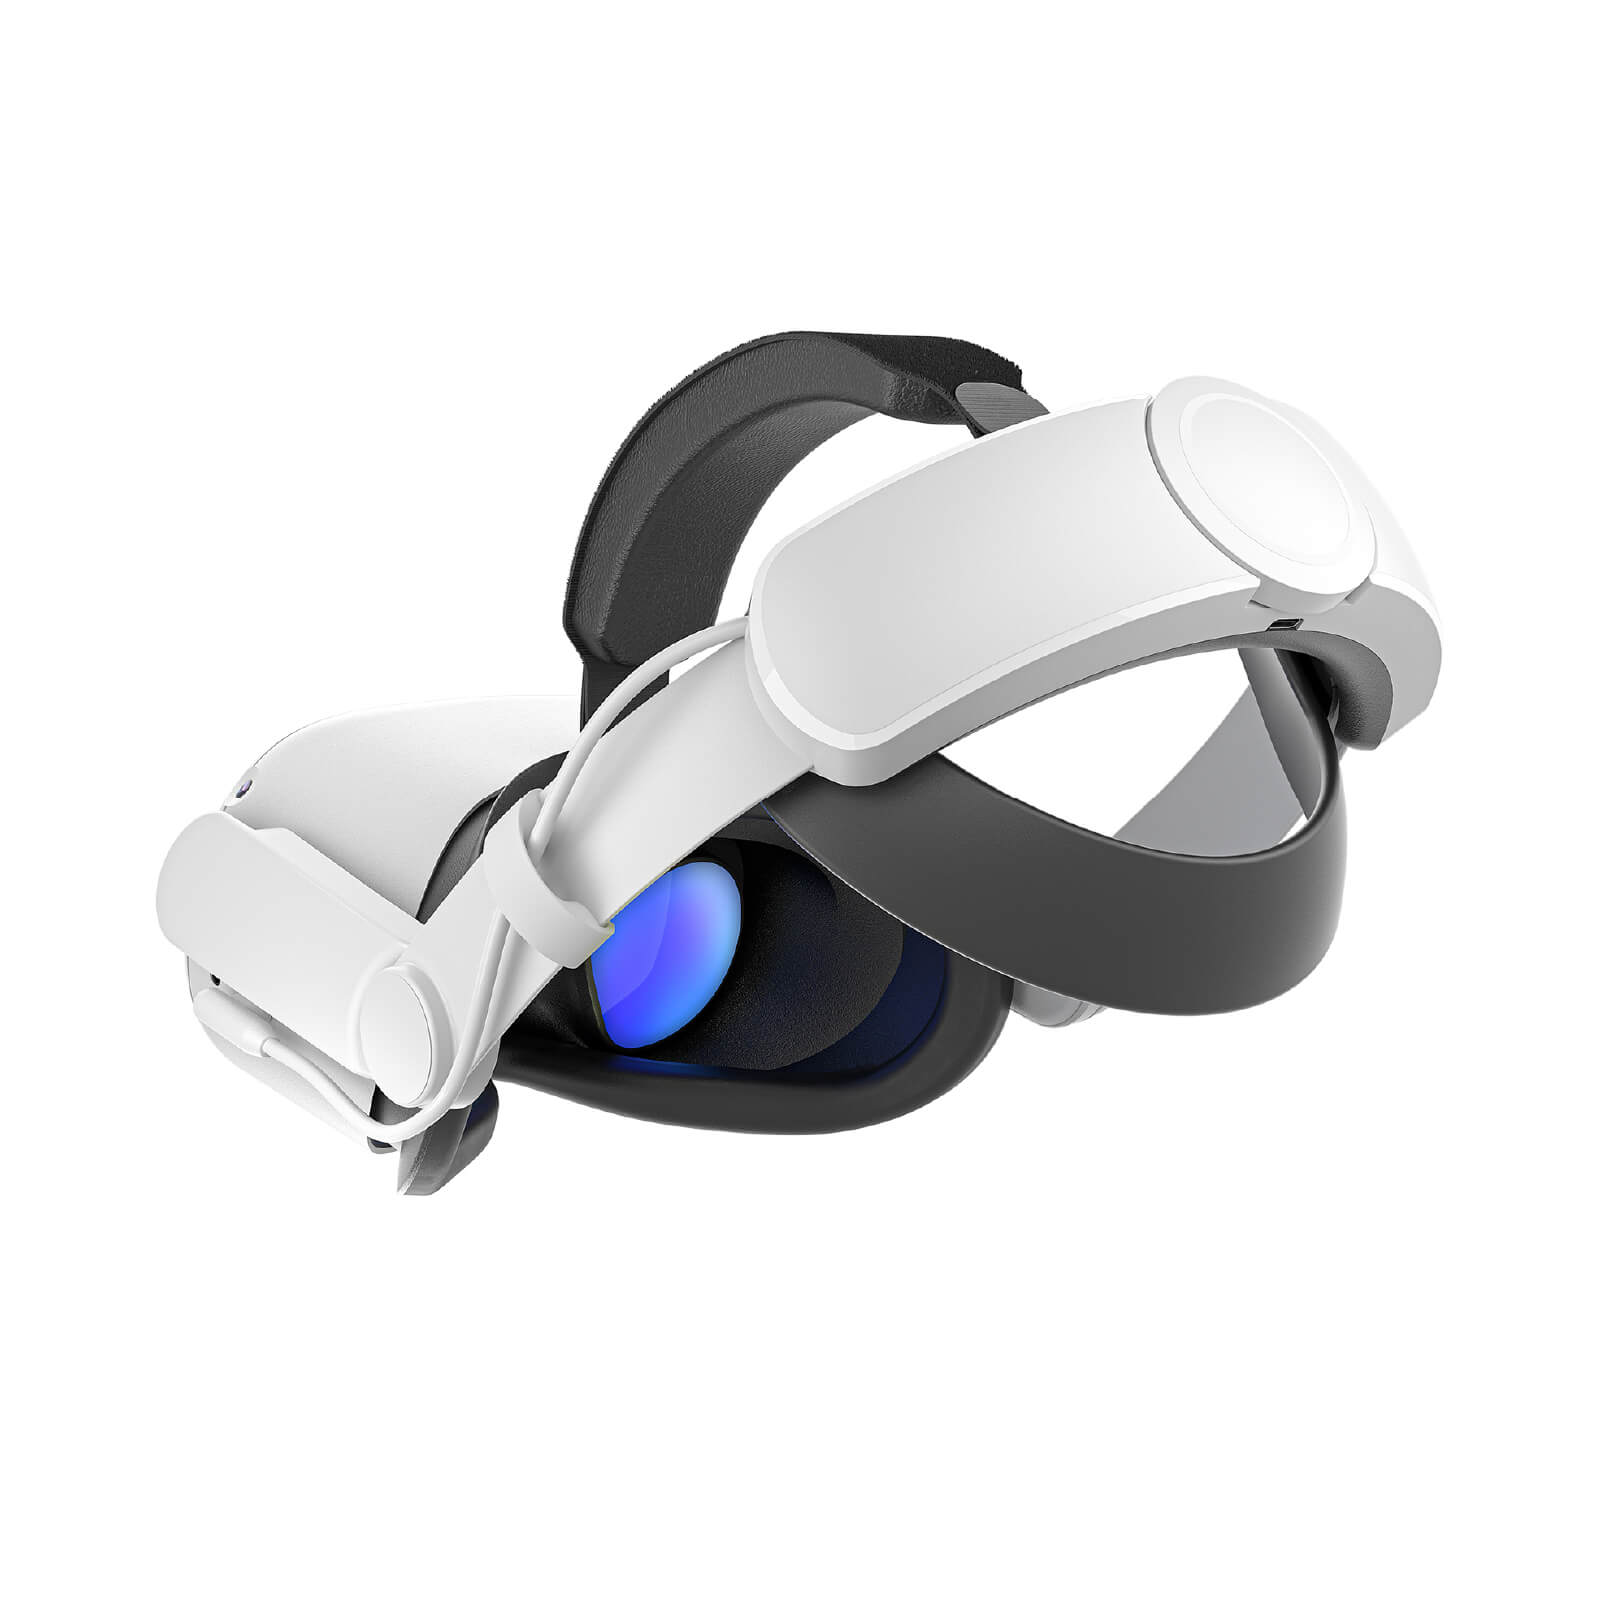 Serre-tête halo strap réglable pour casque VR Meta Quest 2